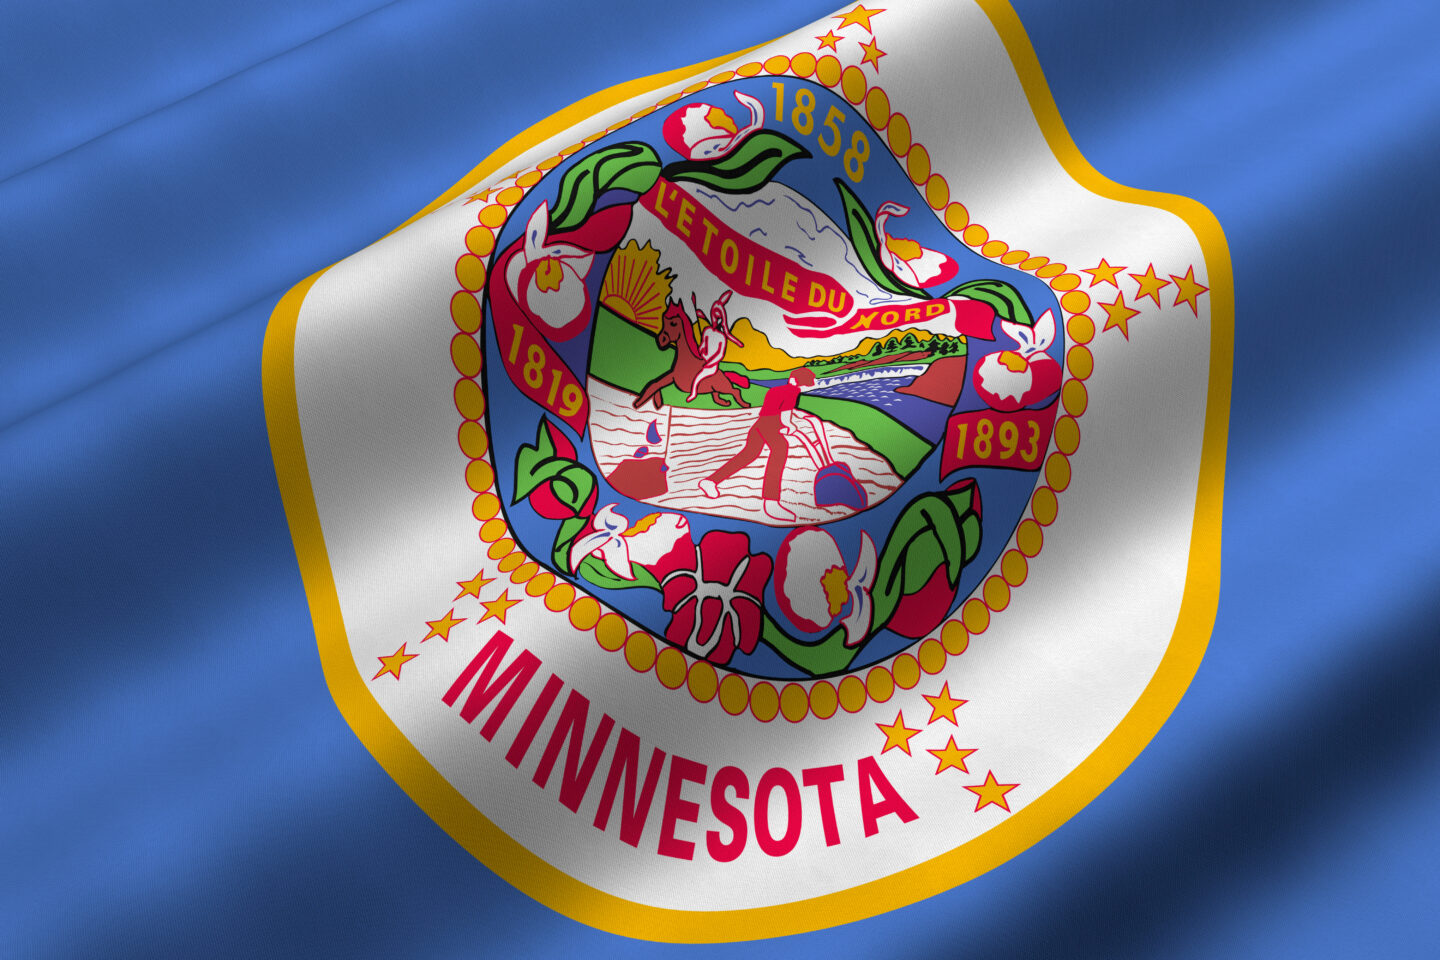 Minnesota zostaje 23. stanem, który zalegalizował rekreacyjną marihuanę